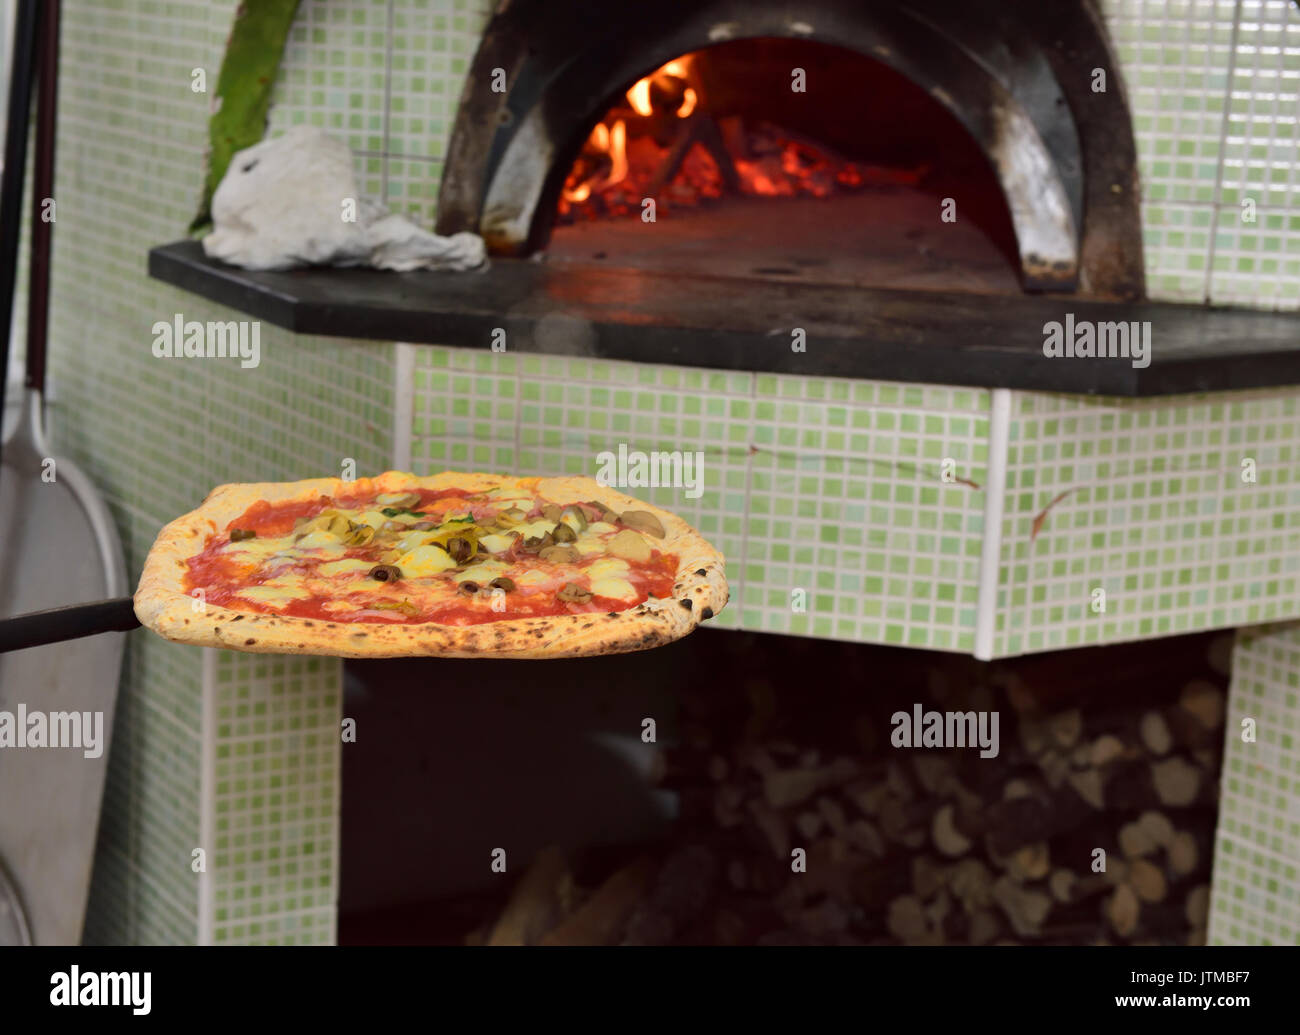 La Pizza come si arriva fuori a legna tradizionale forno per pizza sulla paletta, Napoli, Italia Foto Stock